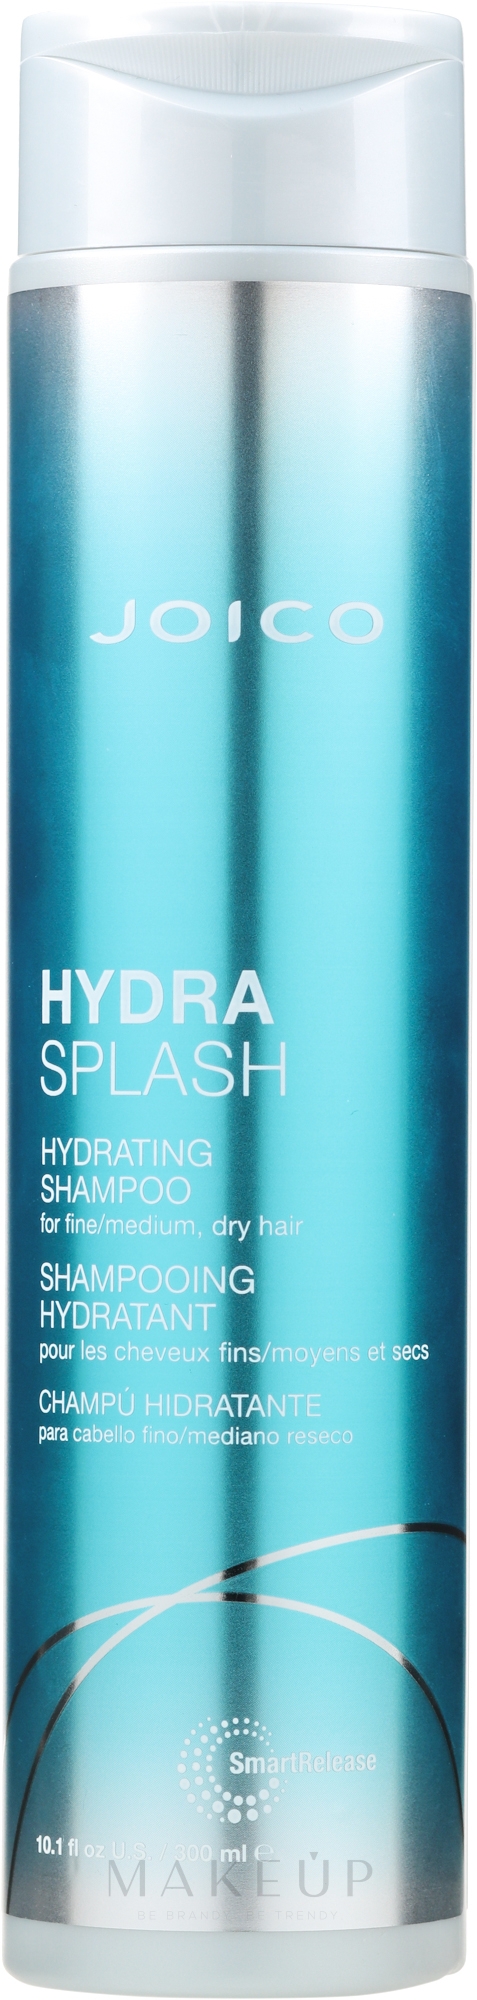 Feuchtigkeitsspendendes Shampoo für feines und trockenes Haar - Joico Hydrasplash Hydrating Shampoo — Bild 300 ml